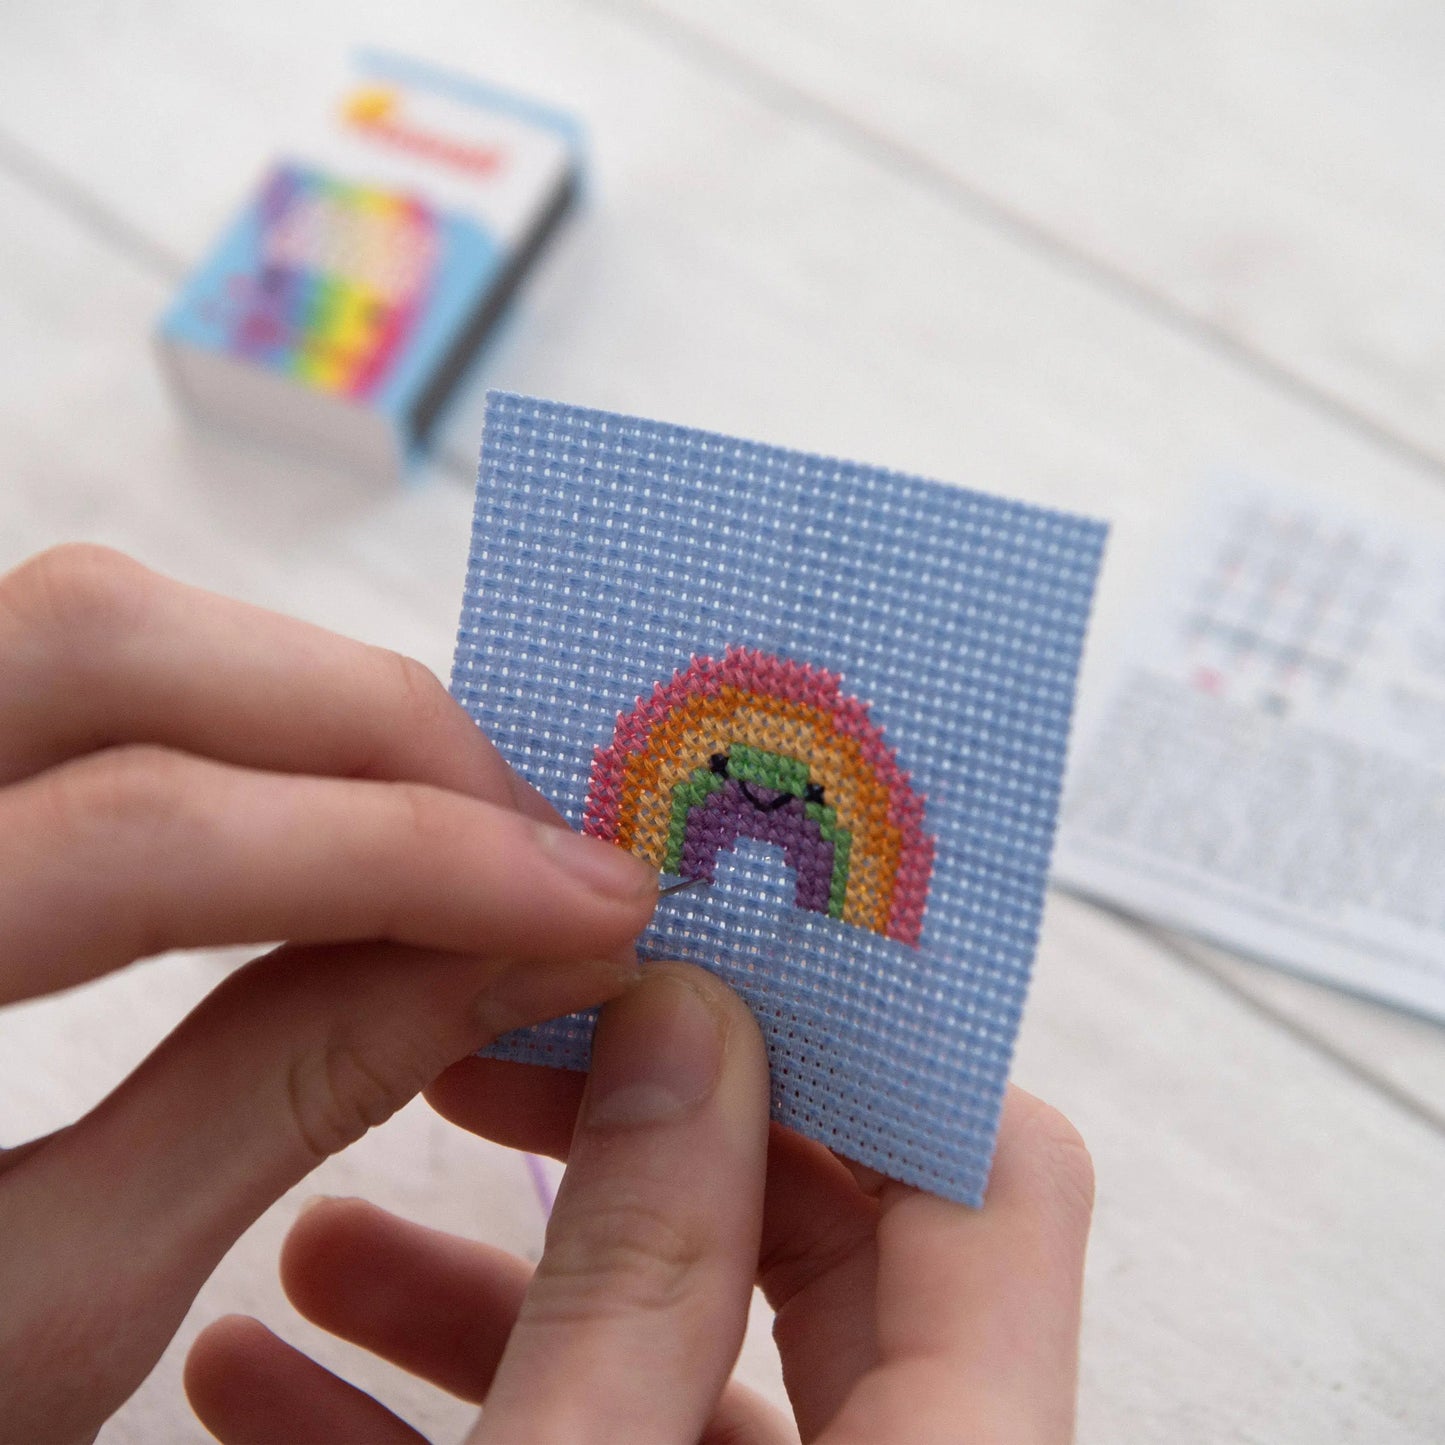 Kawaii Rainbow Cross Stitch Kit